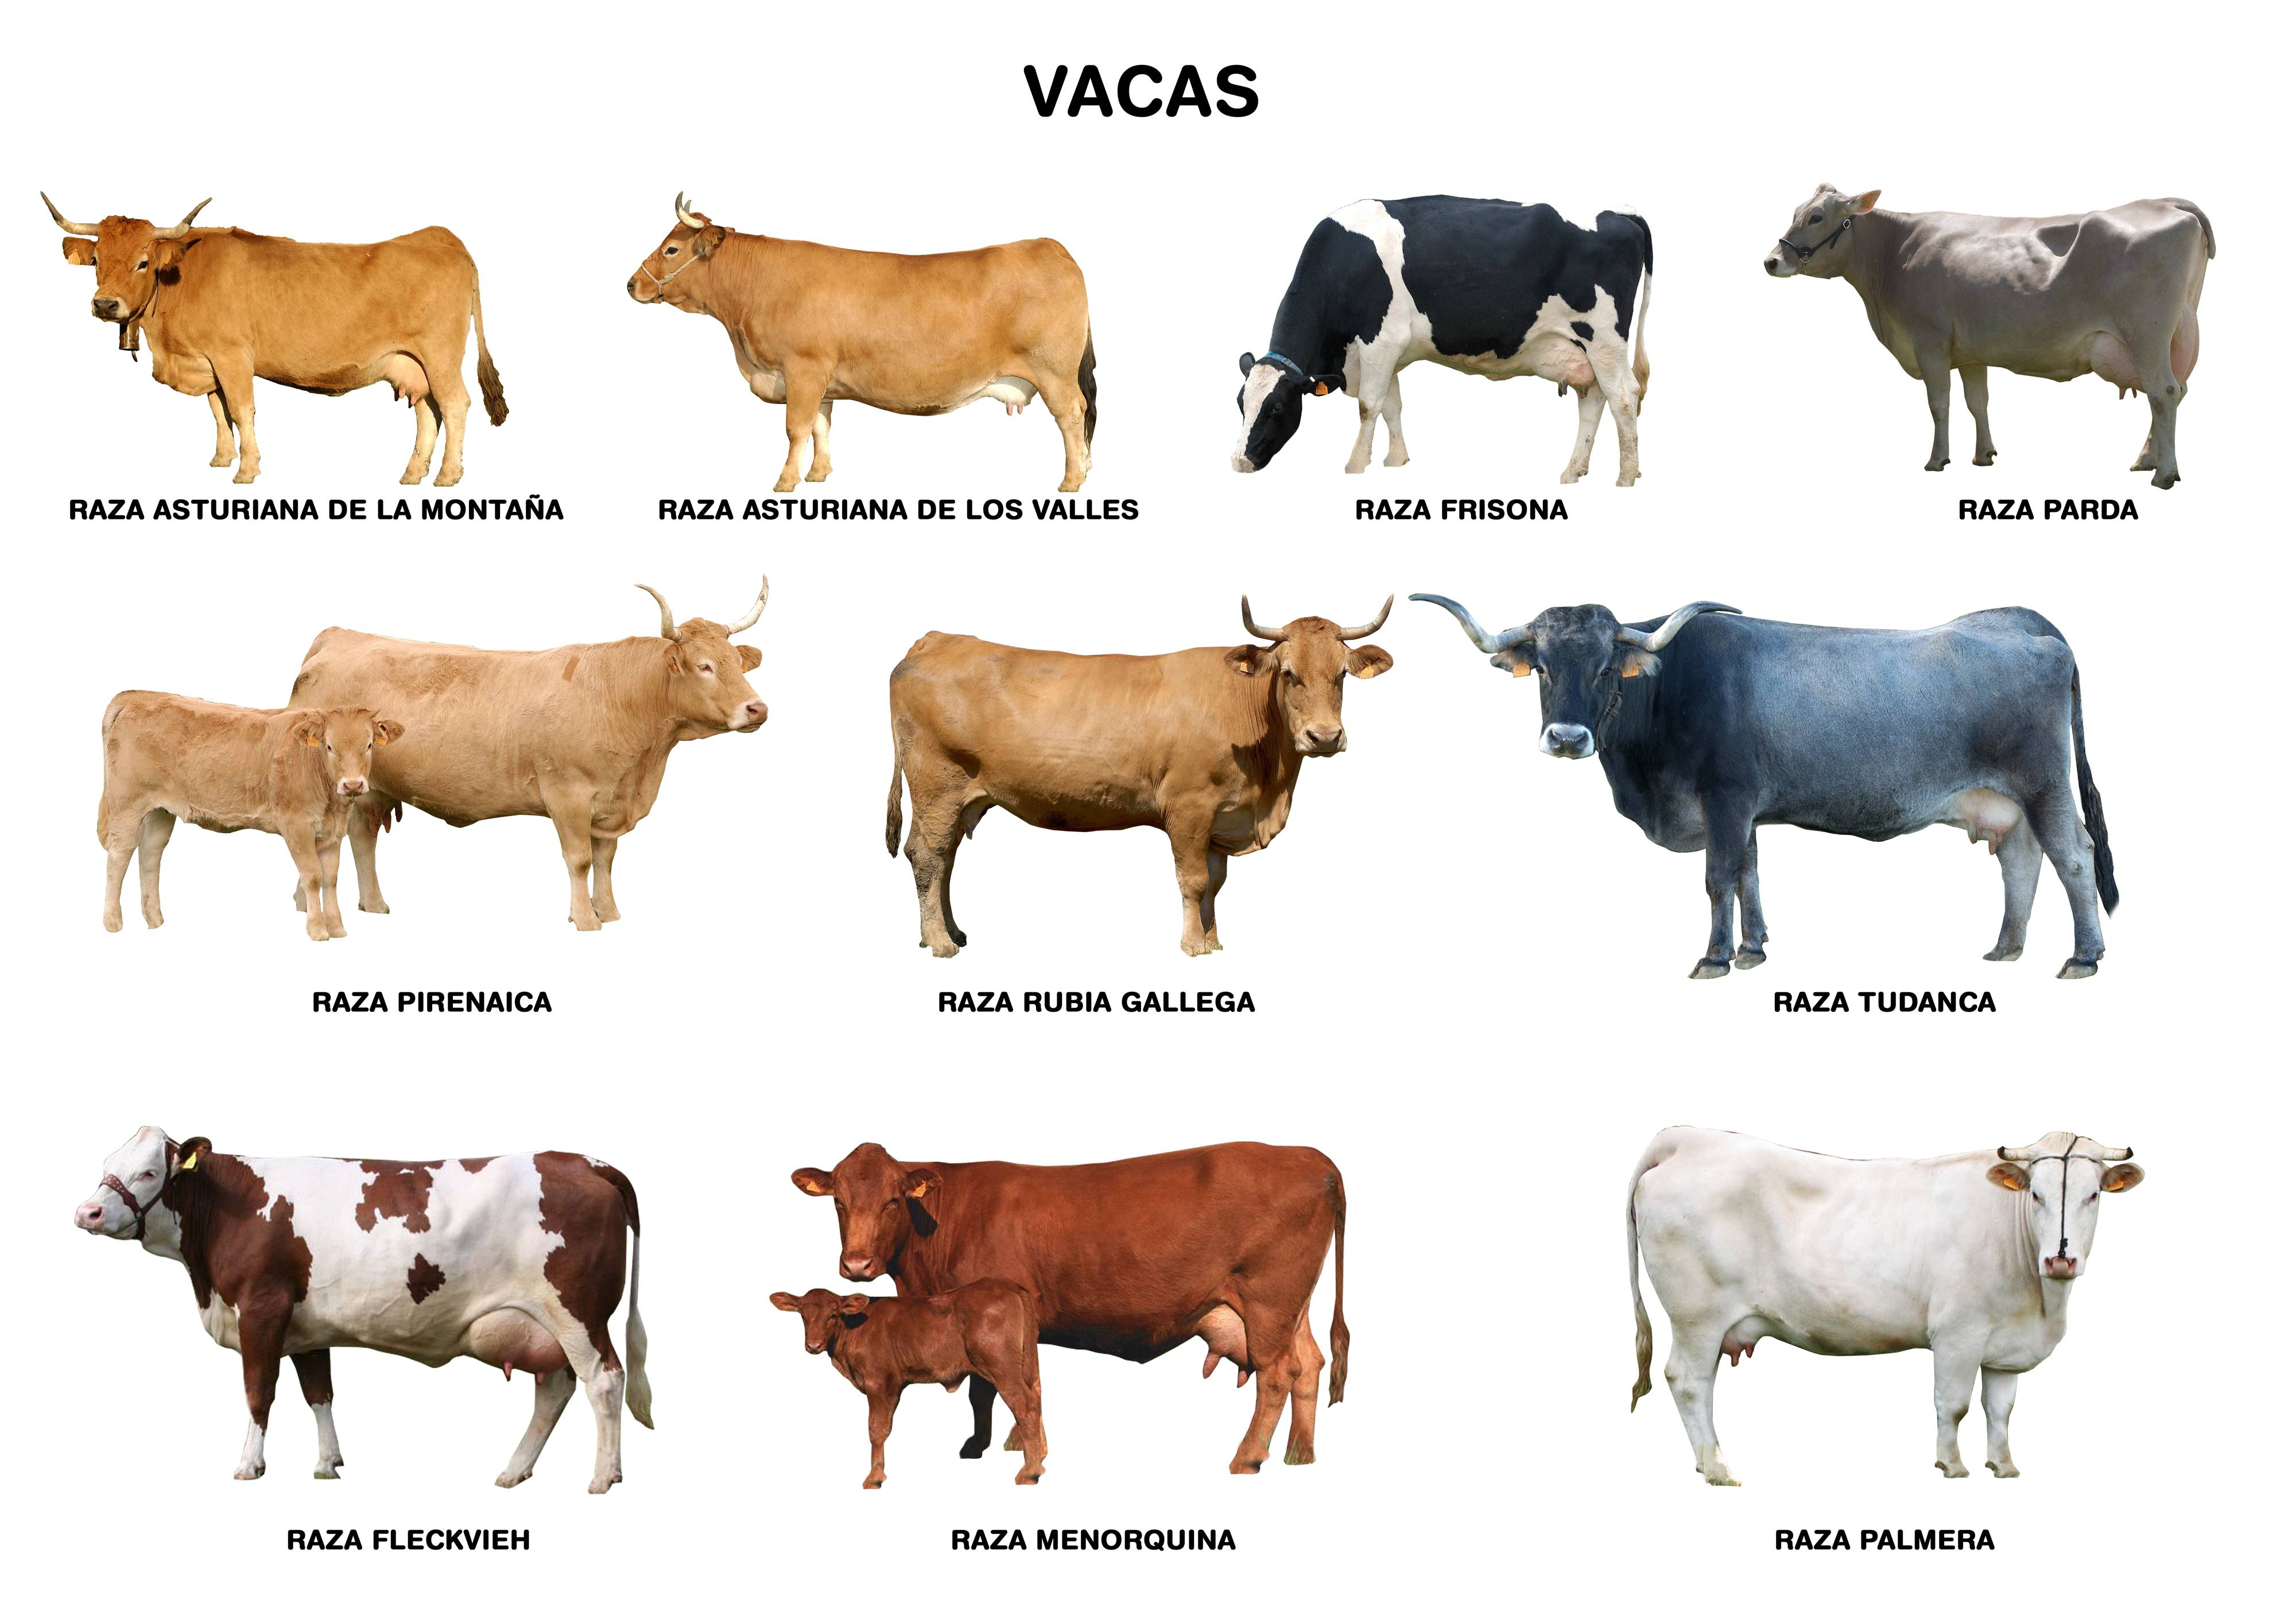 sinsonte Obediente Comprimir Estas son las razas de vacas lecheras más importantes en España - Es Queso